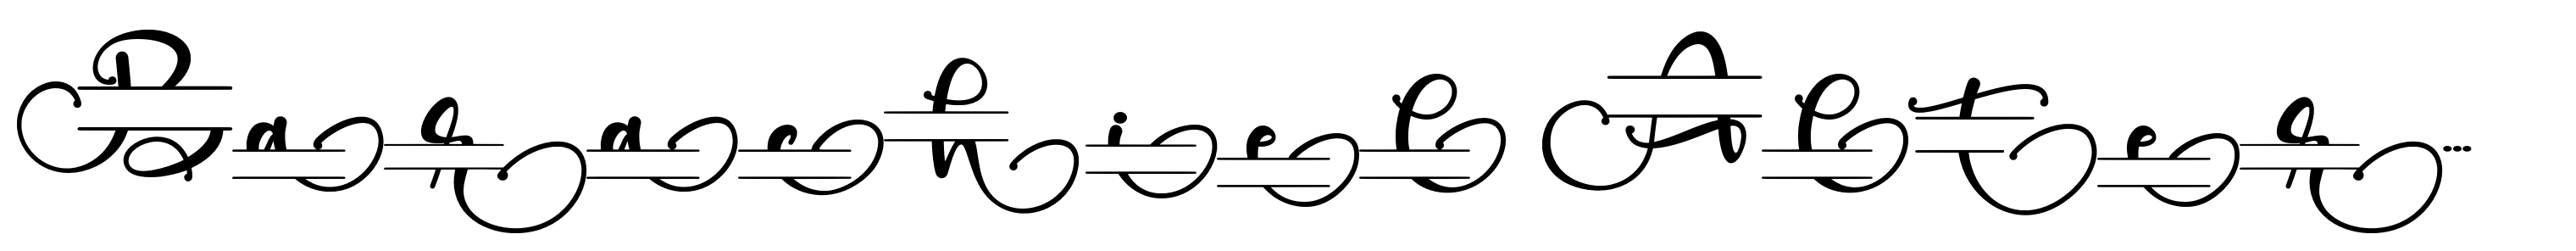 Barachiel Alternate Monogram